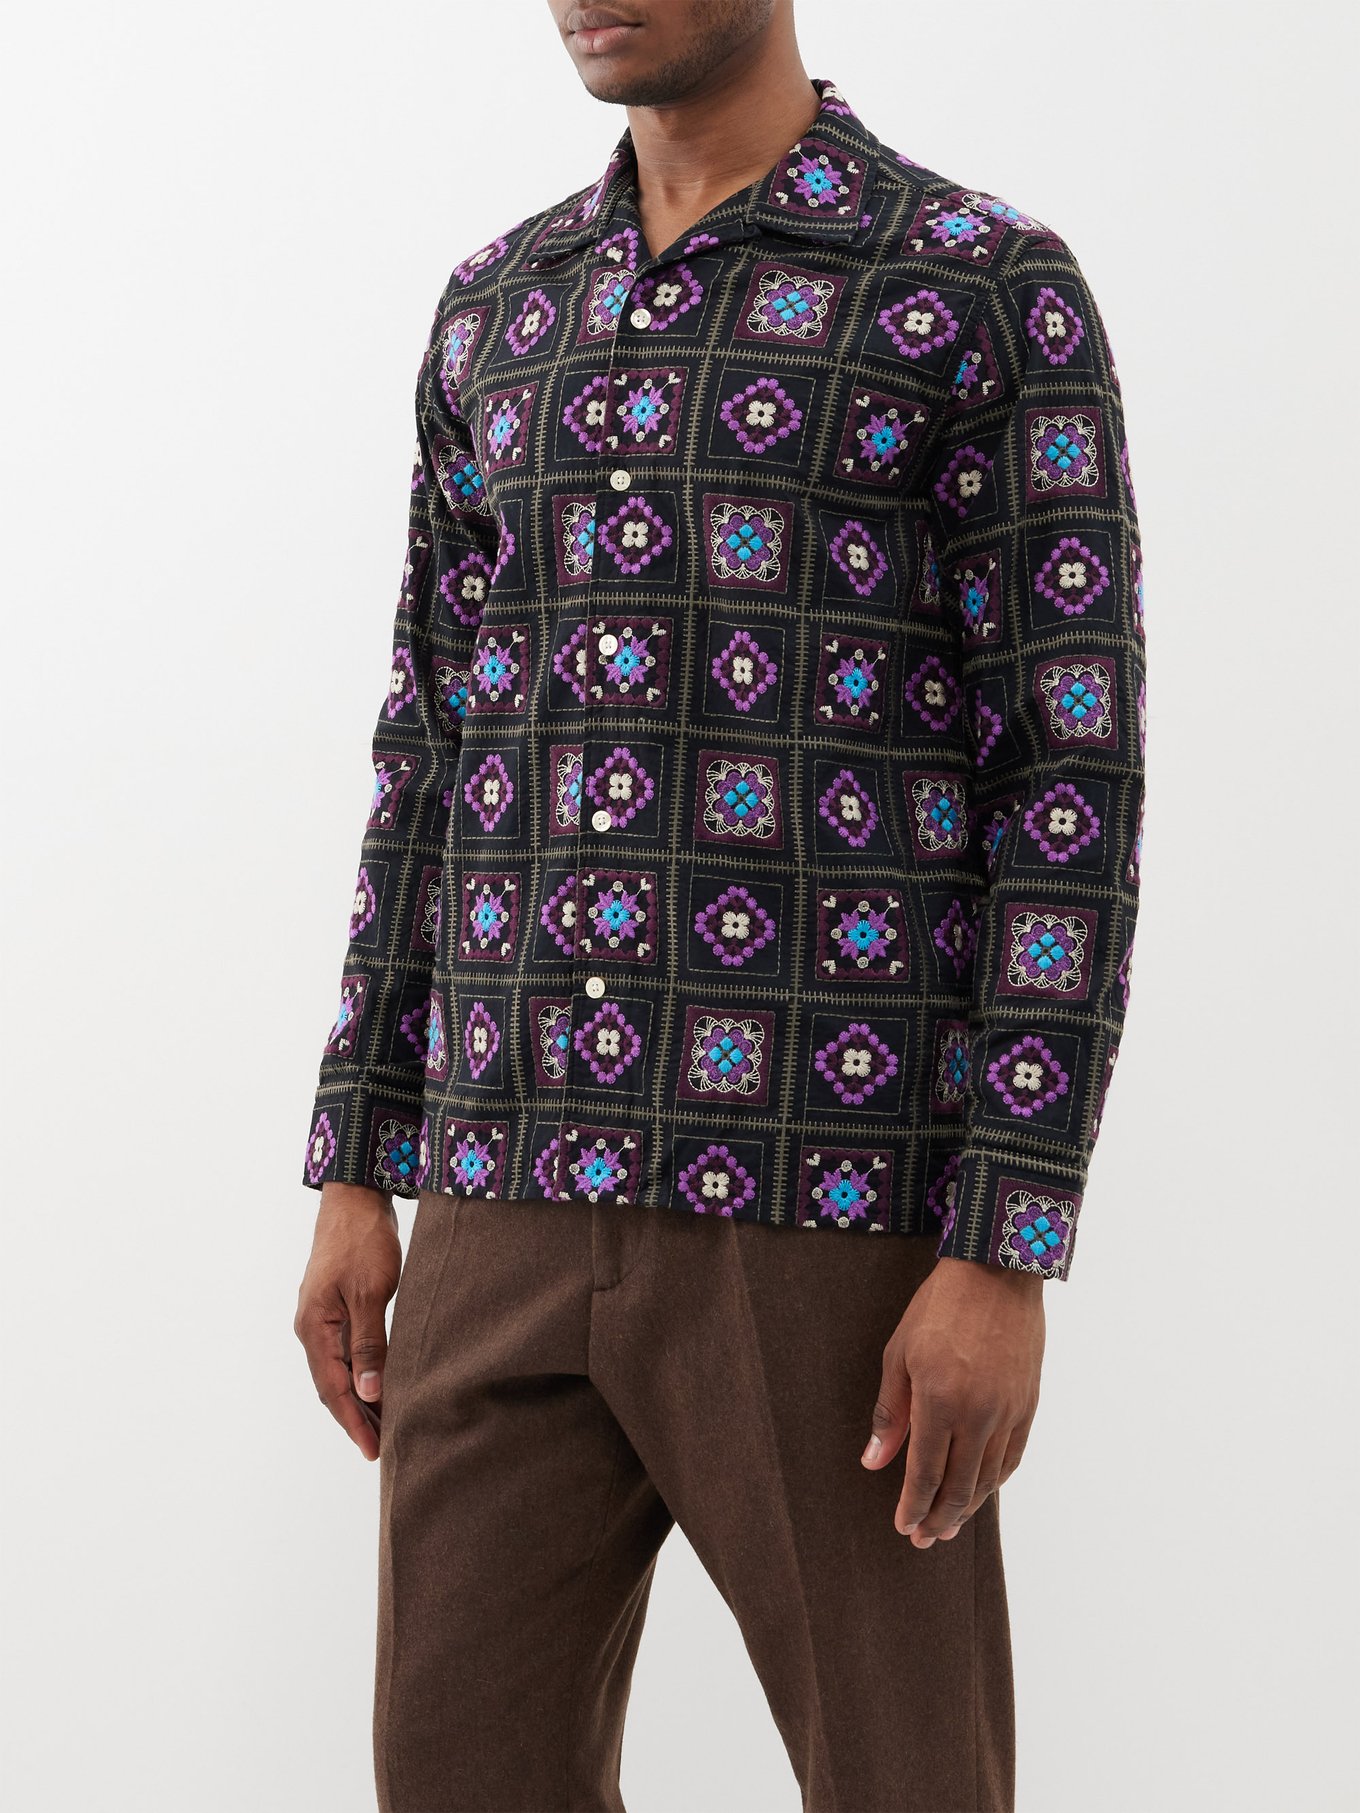 Louis Vuitton Short-sleeved Denim Workwear Shirt